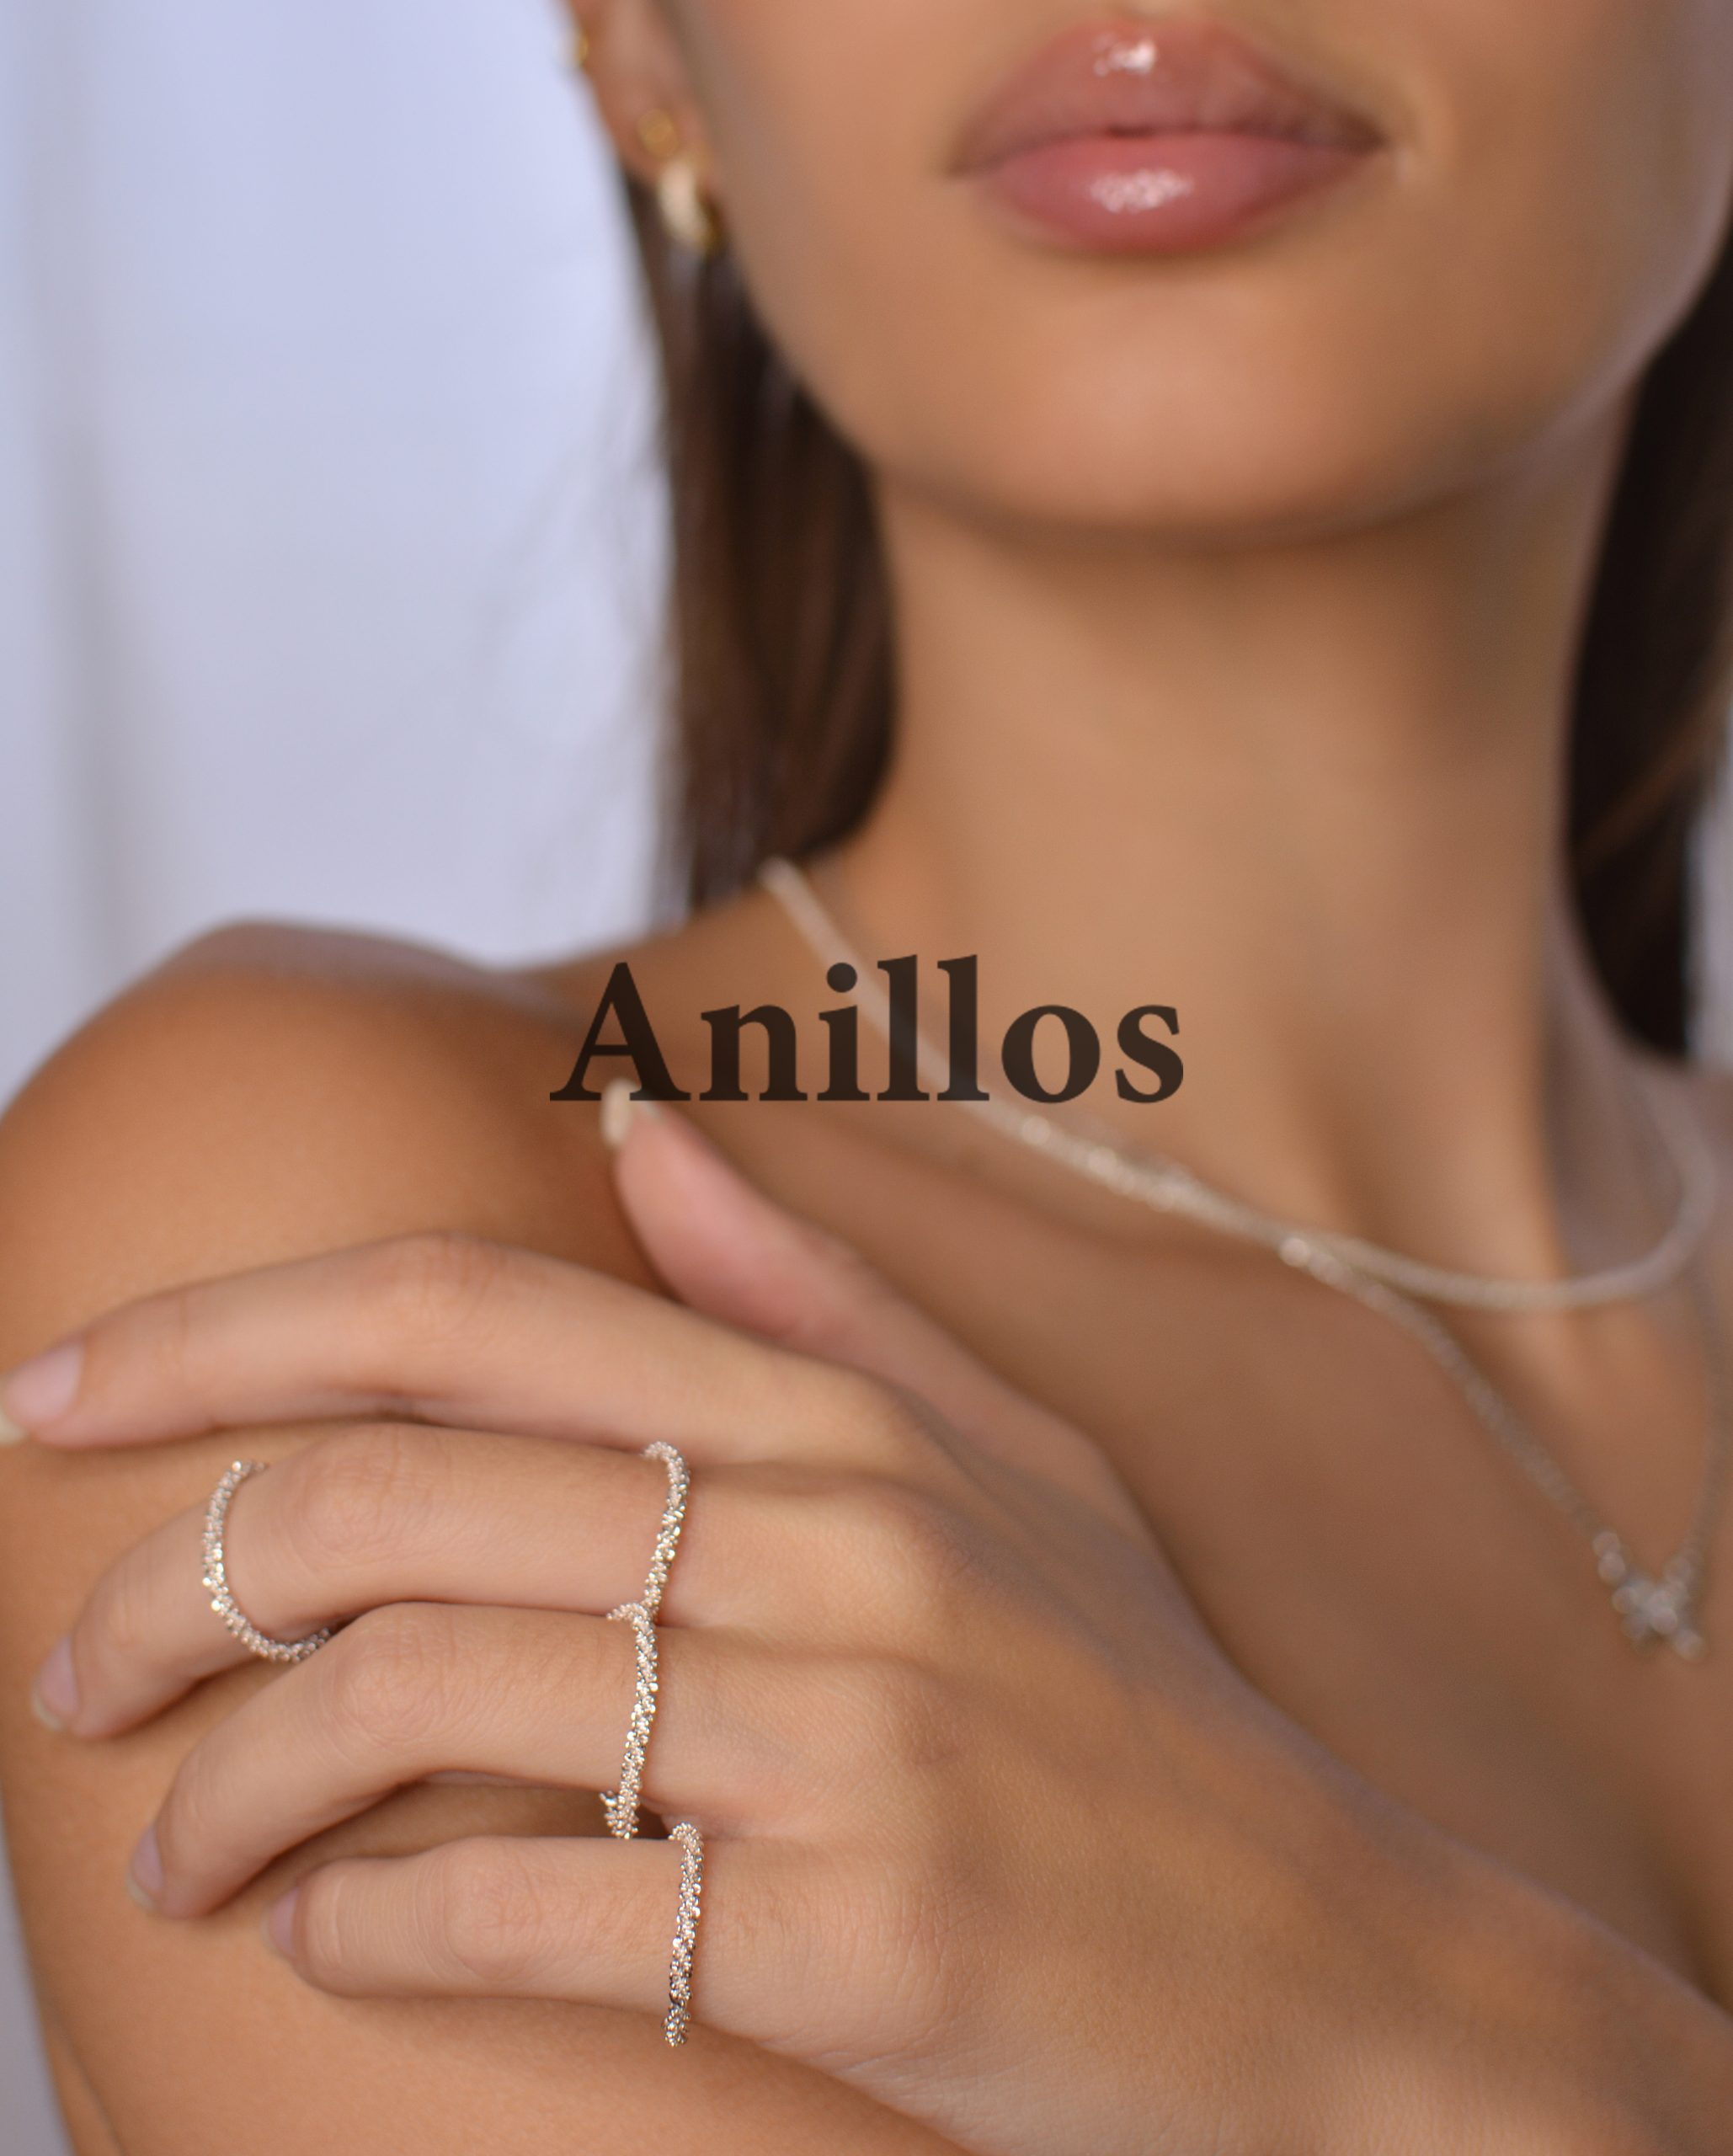 Anillos Syrenias Jewelry 